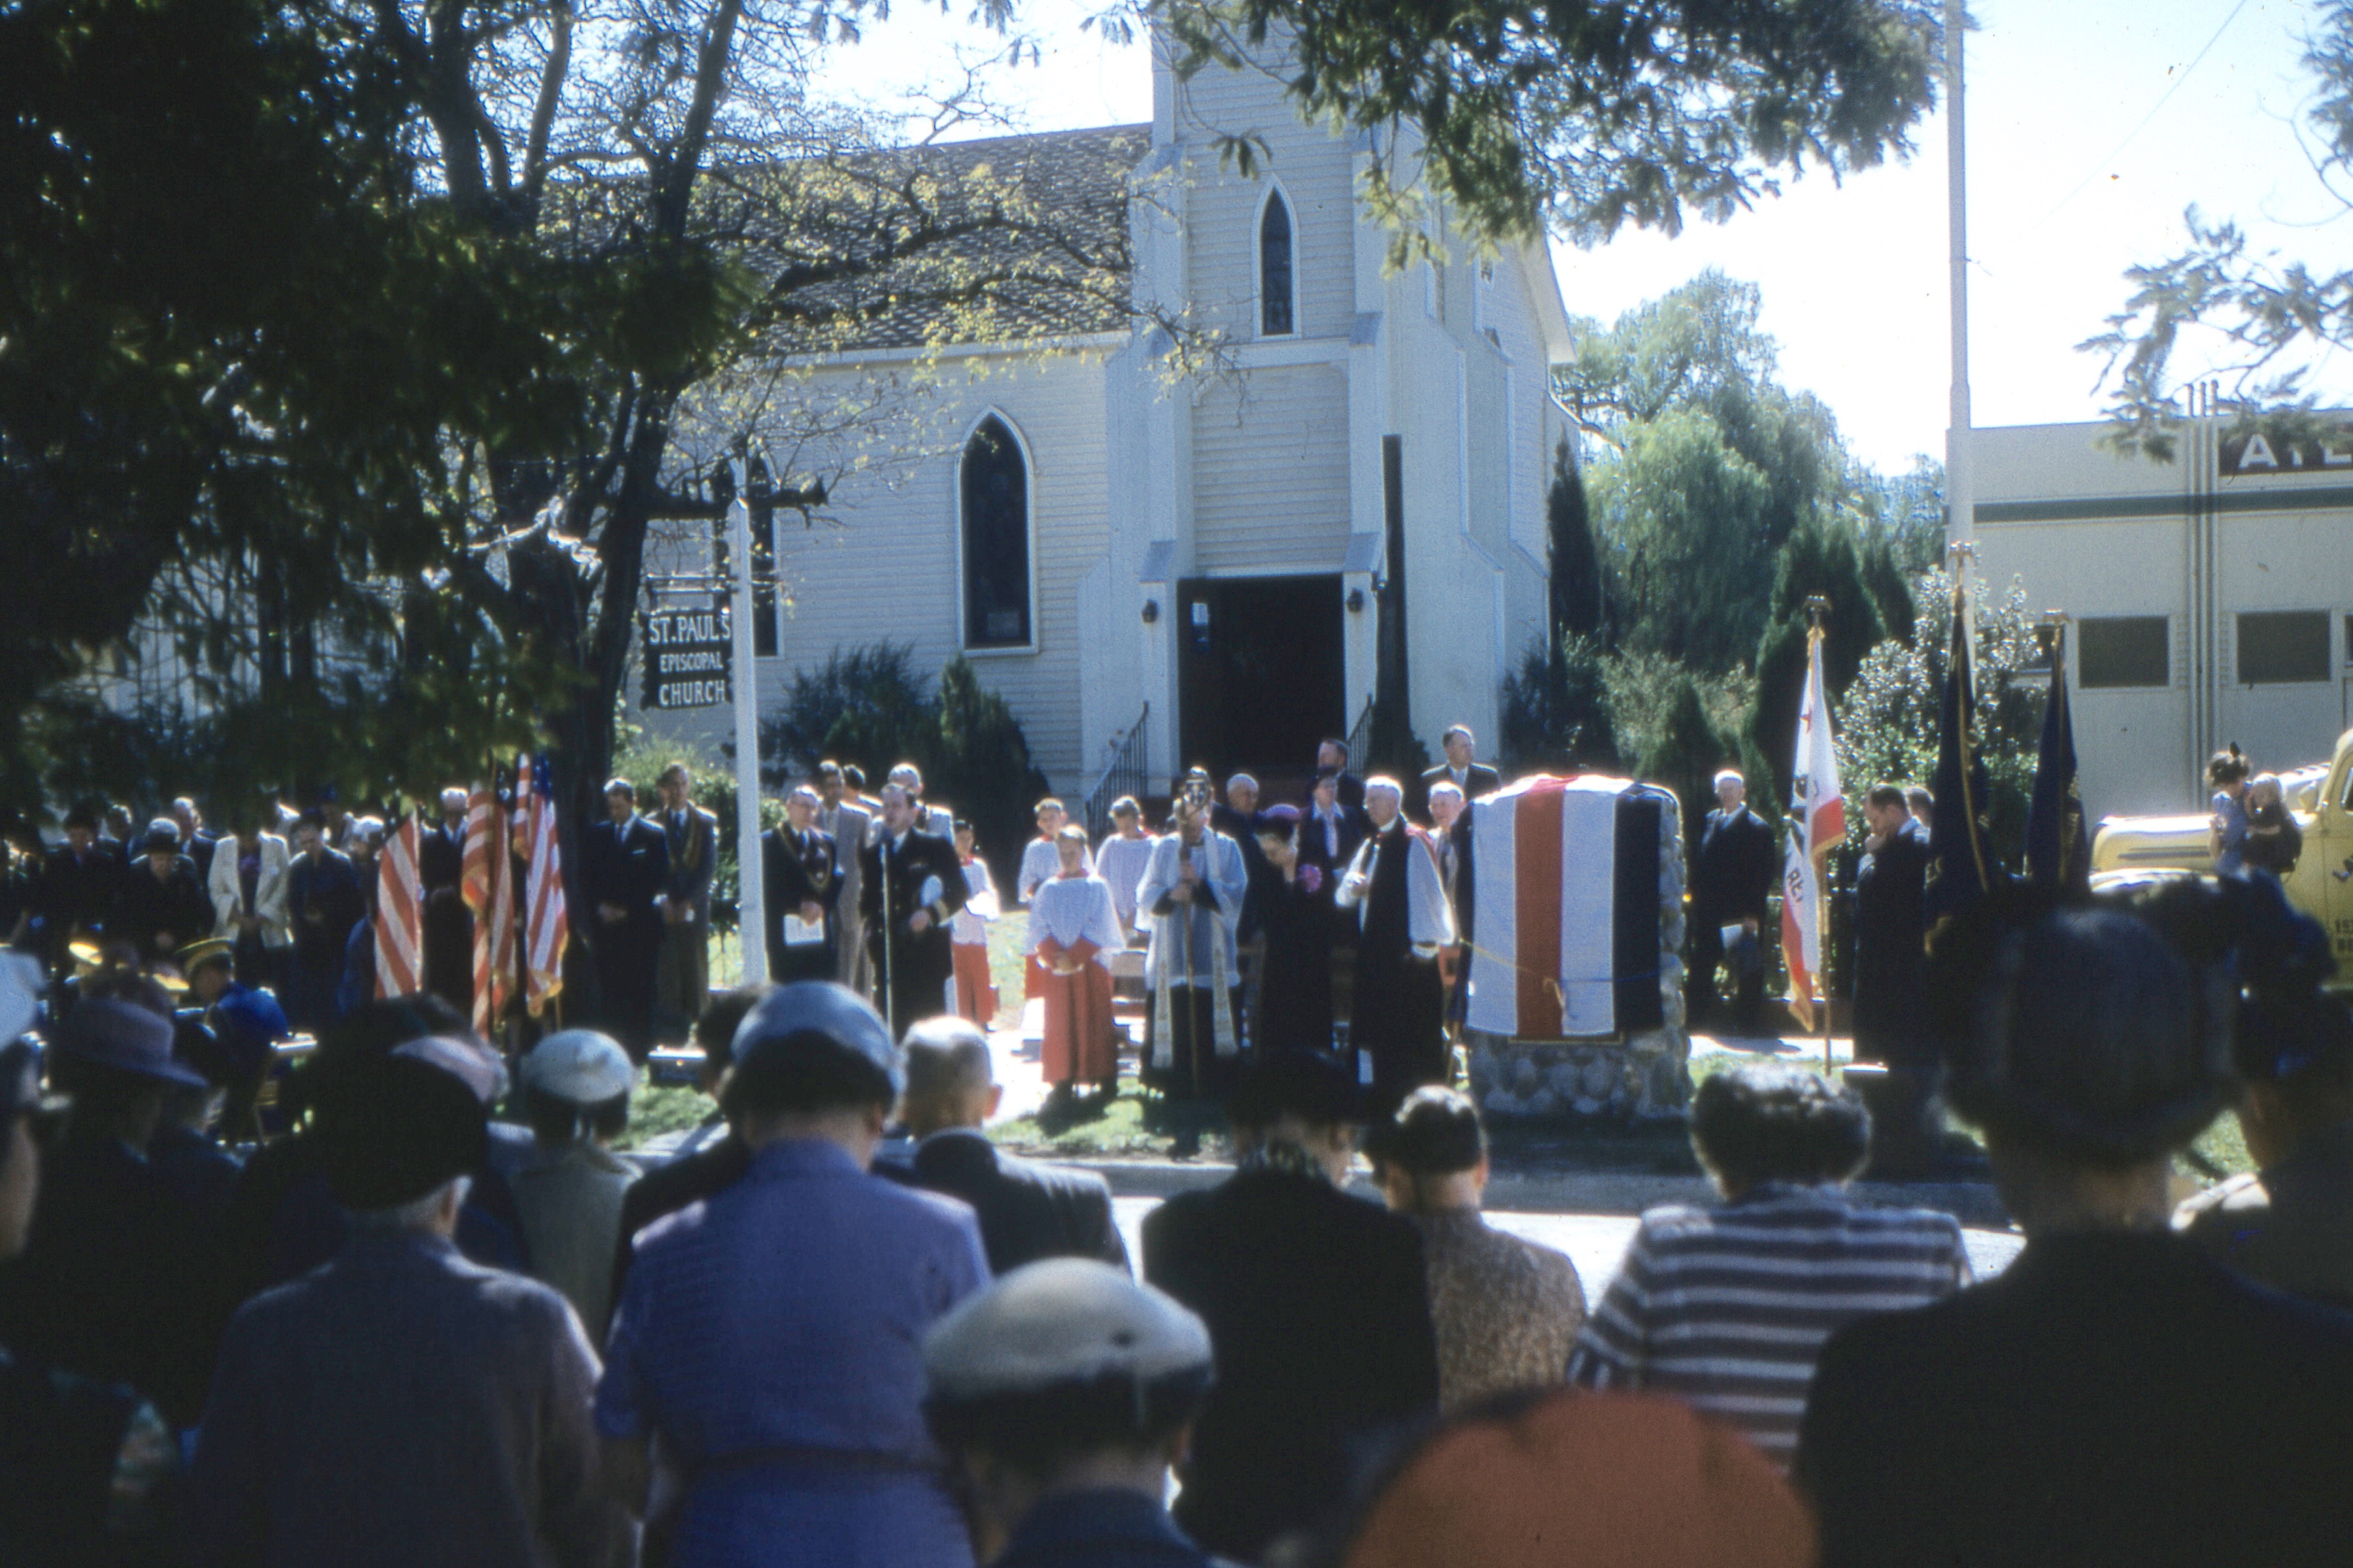 Centennial celebration - Oct. 17, 1954